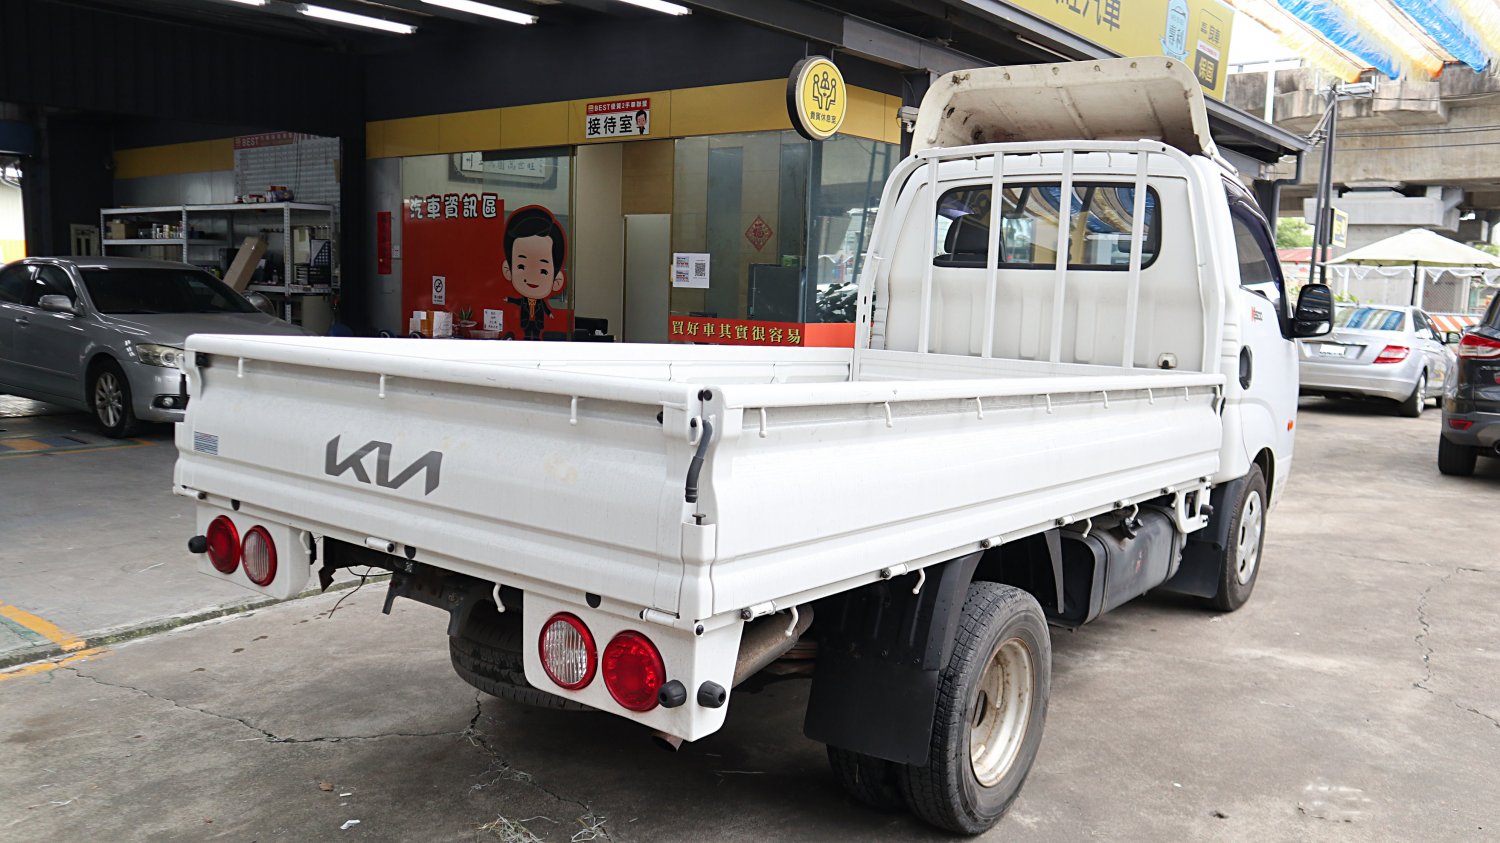 Kia 起亞 ／ Kaon ／ 2015年 ／ 2015年 KIA Kaon 白色 起亞中古貨車 ／ MG車庫(台南)